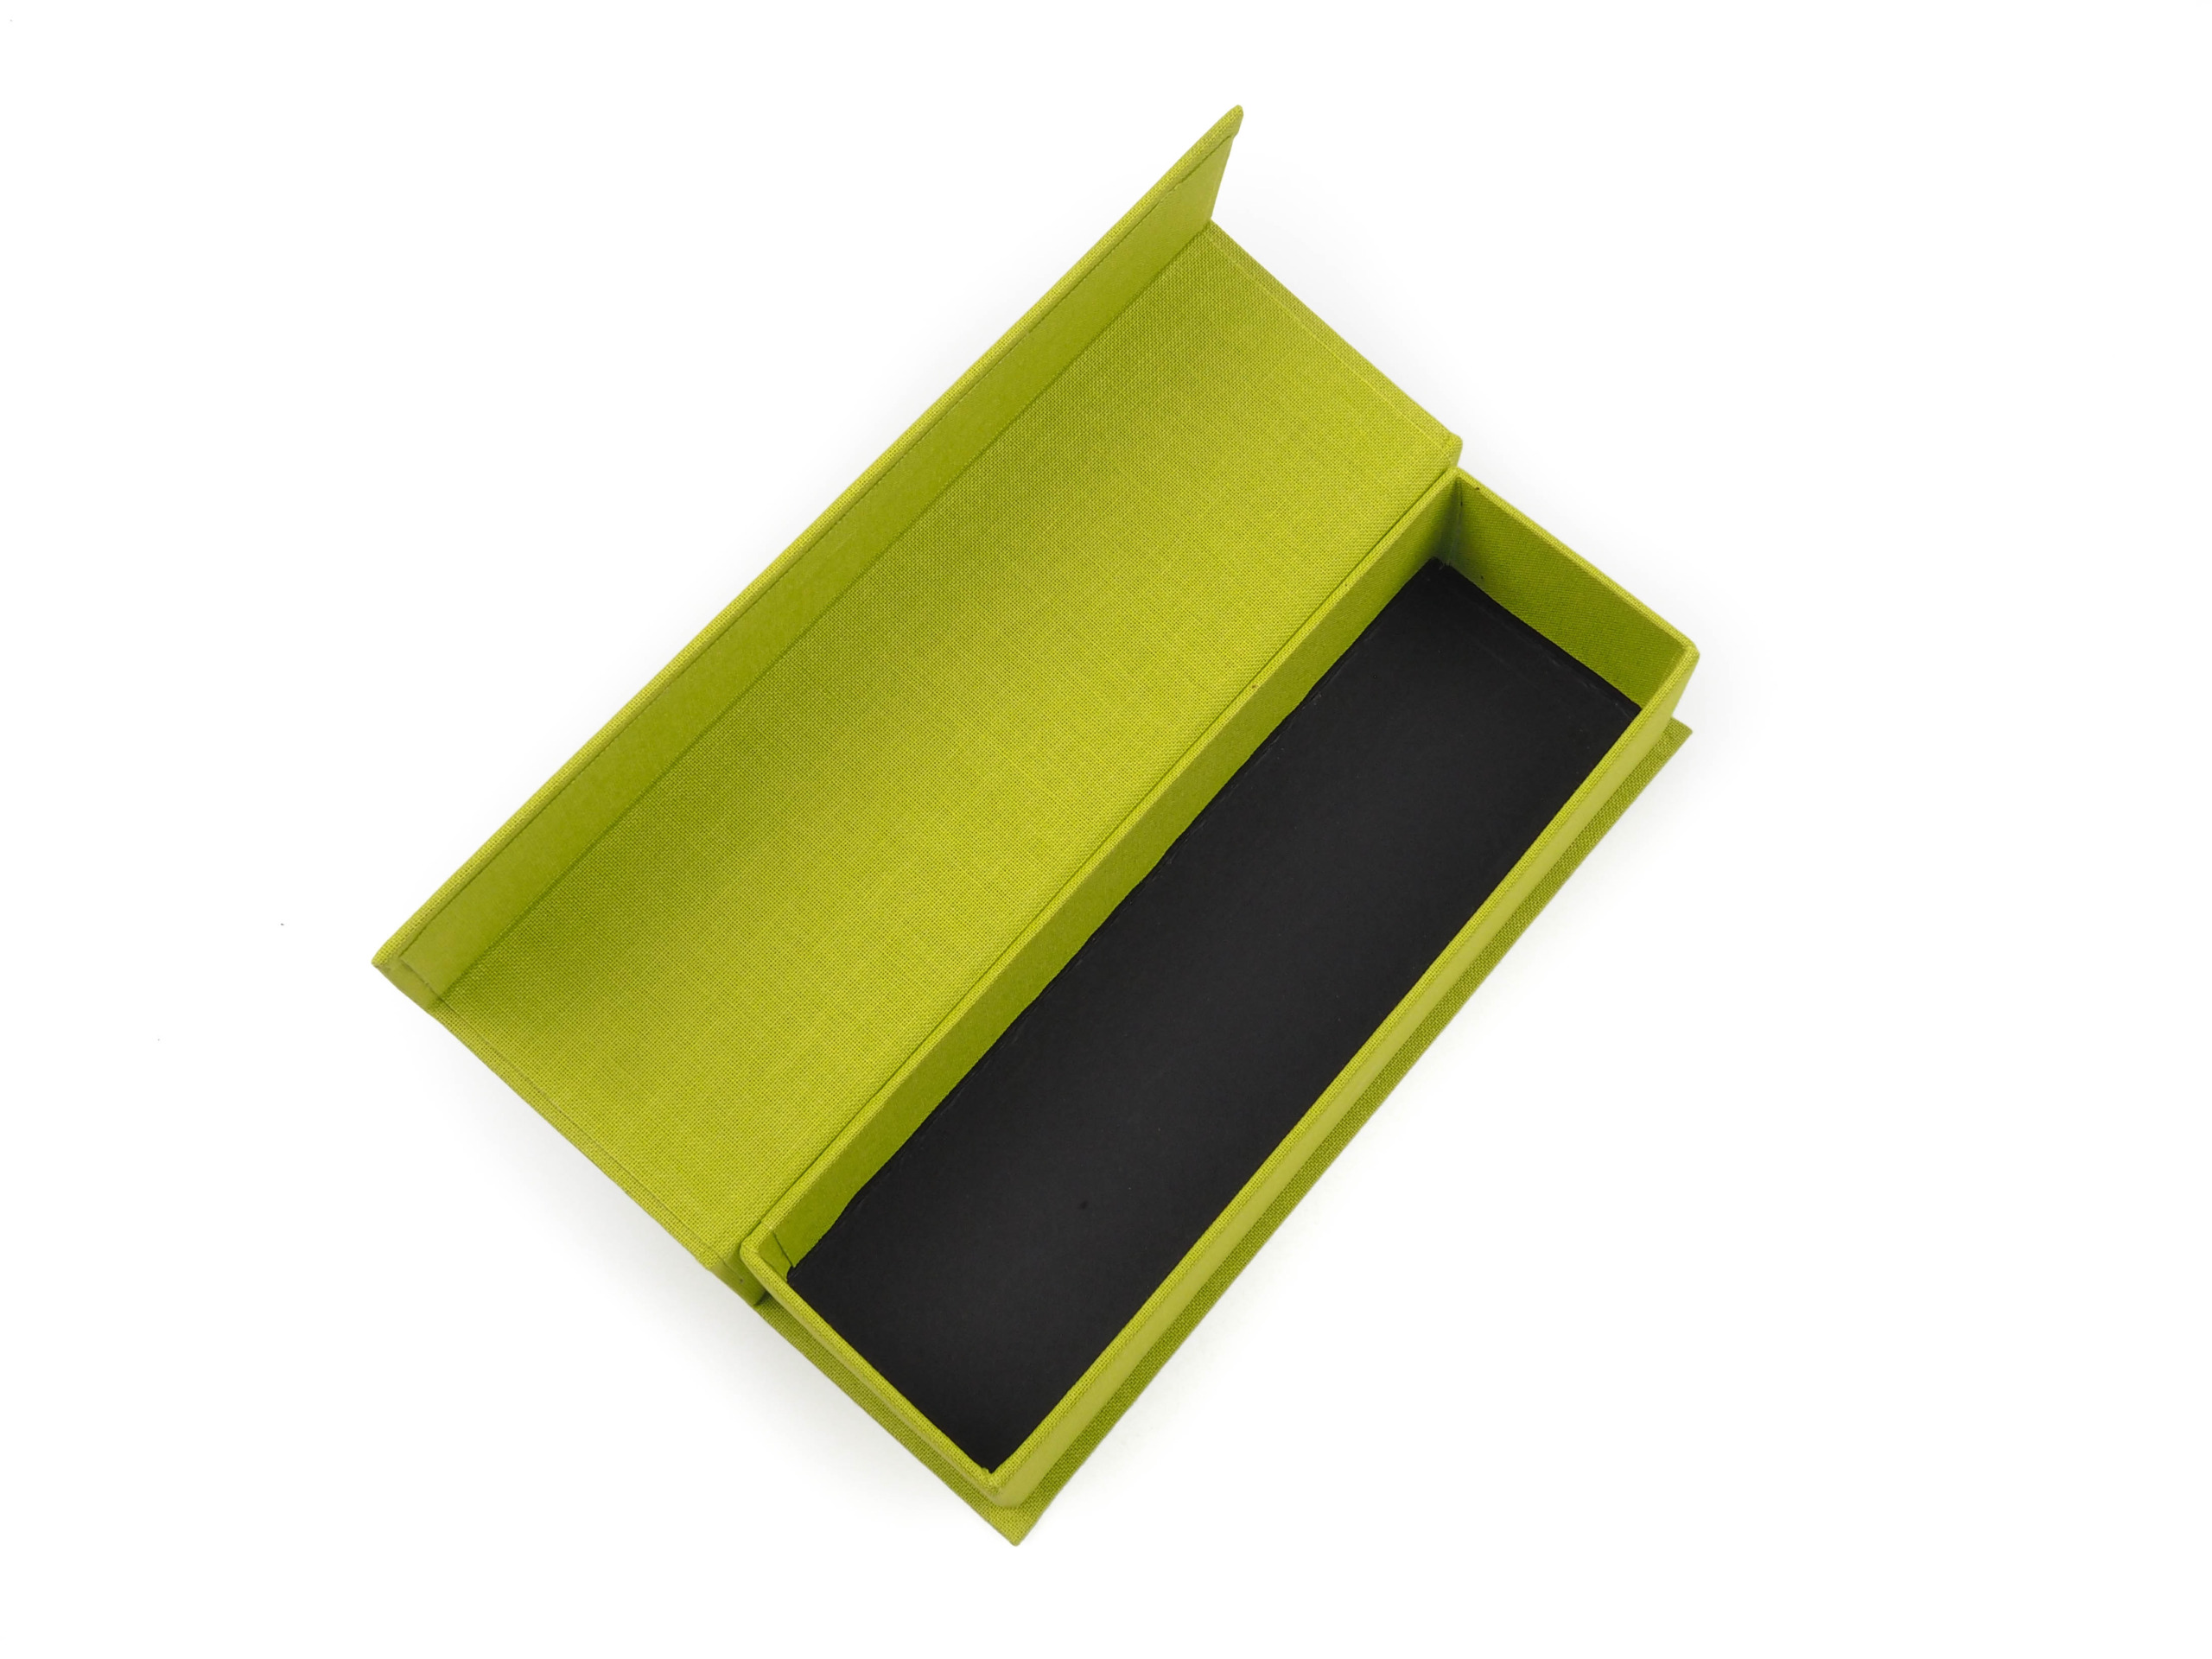 Dárková krabička s magnetickým zavíráním byla vyrobena v potahu ze svítivě zelené textilie. Víčko je magnetická a dno krabičky je v běžném černém potahu bez struktury.